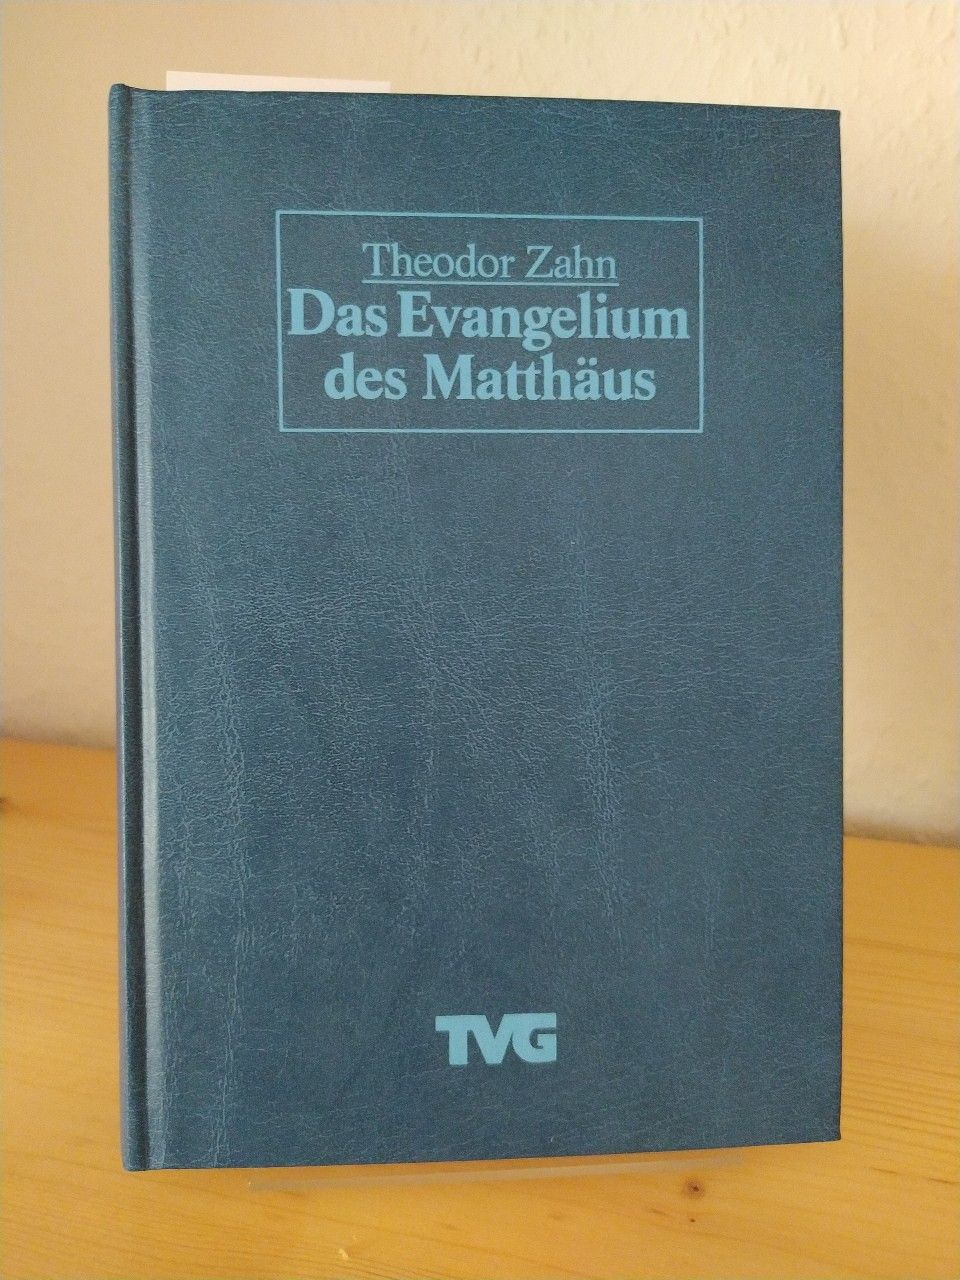 Das Evangelium des Matthäus. [Ausgelegt von Theodor Zahn]. (Theologische Verlagsgemeinschaft TVG). - Zahn, Theodor